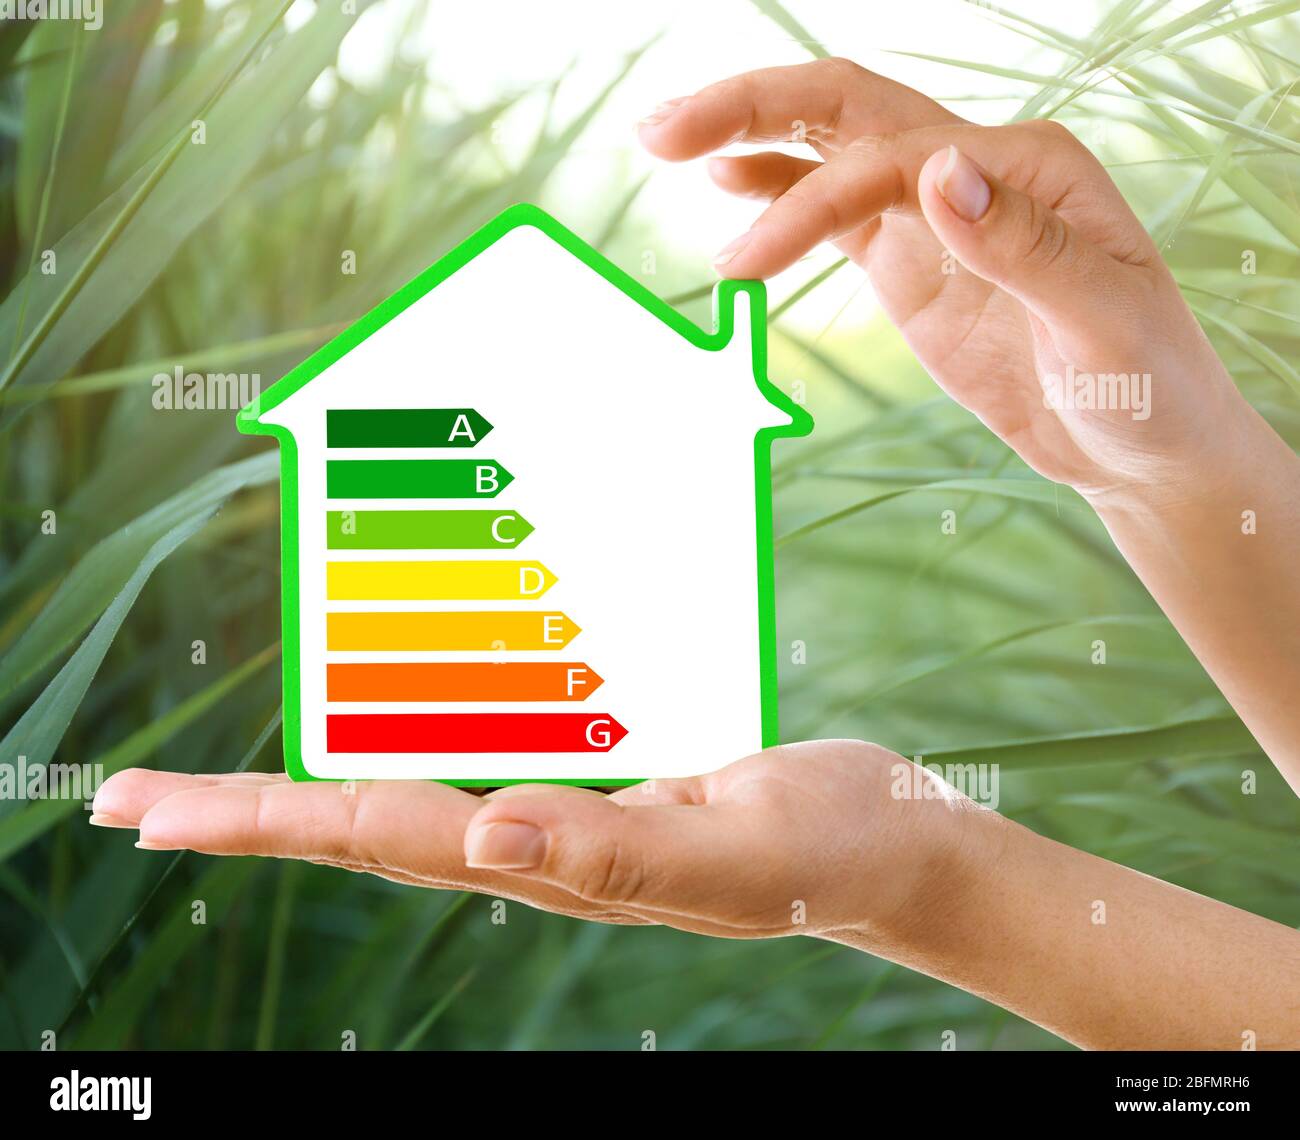 Les mains féminines tiennent la maison avec l'image de l'échelle d'efficacité énergétique sur fond naturel Banque D'Images